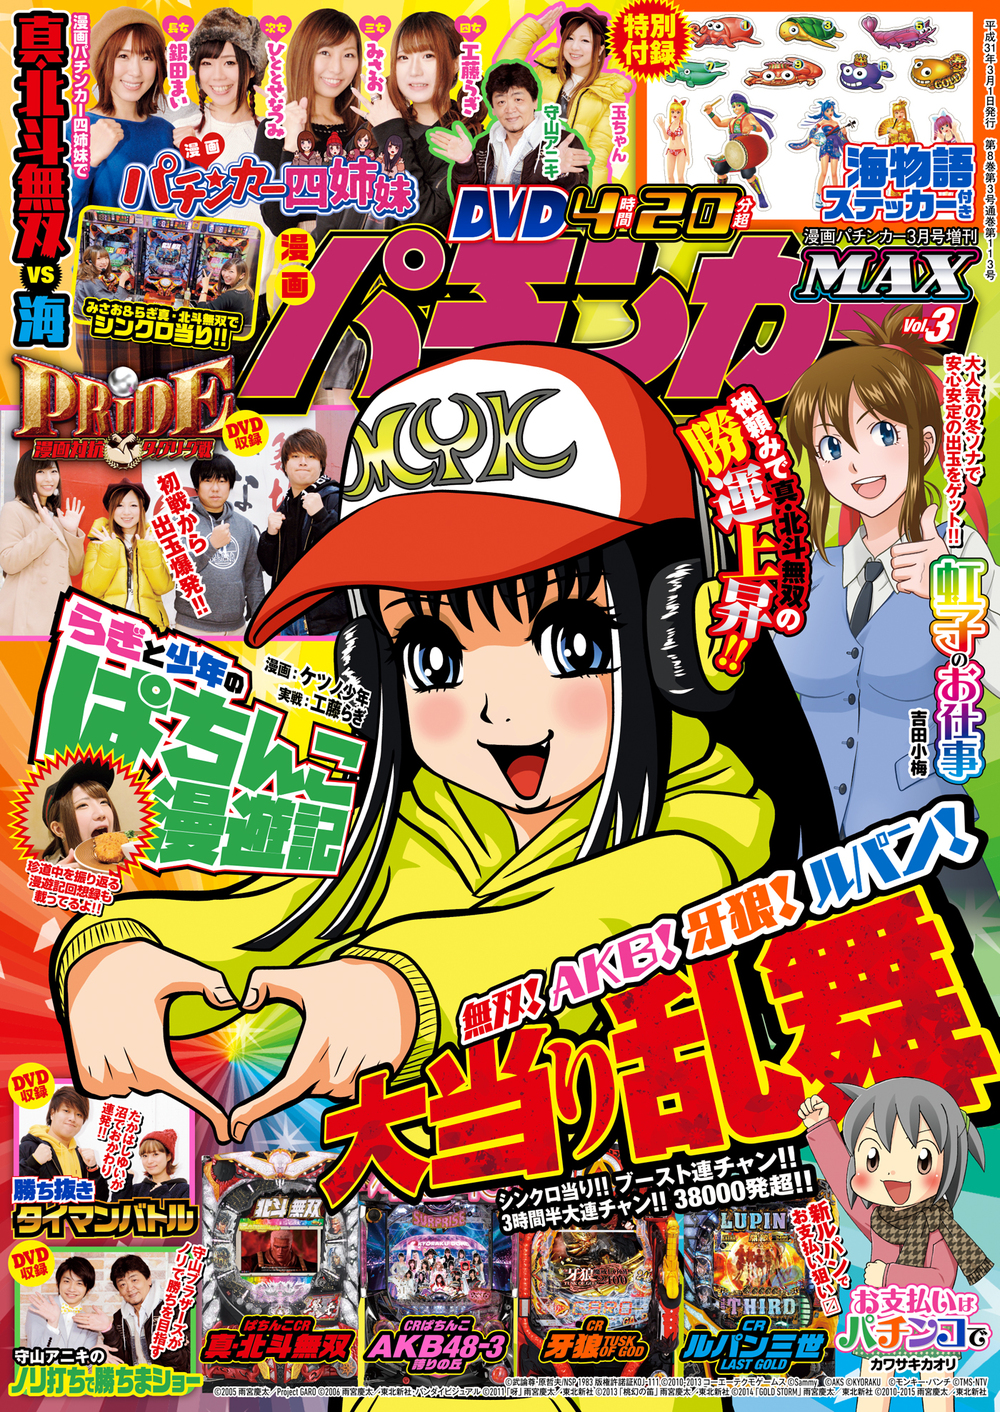 漫画パチンカーMAX Vol.3（2019.1.26発売）